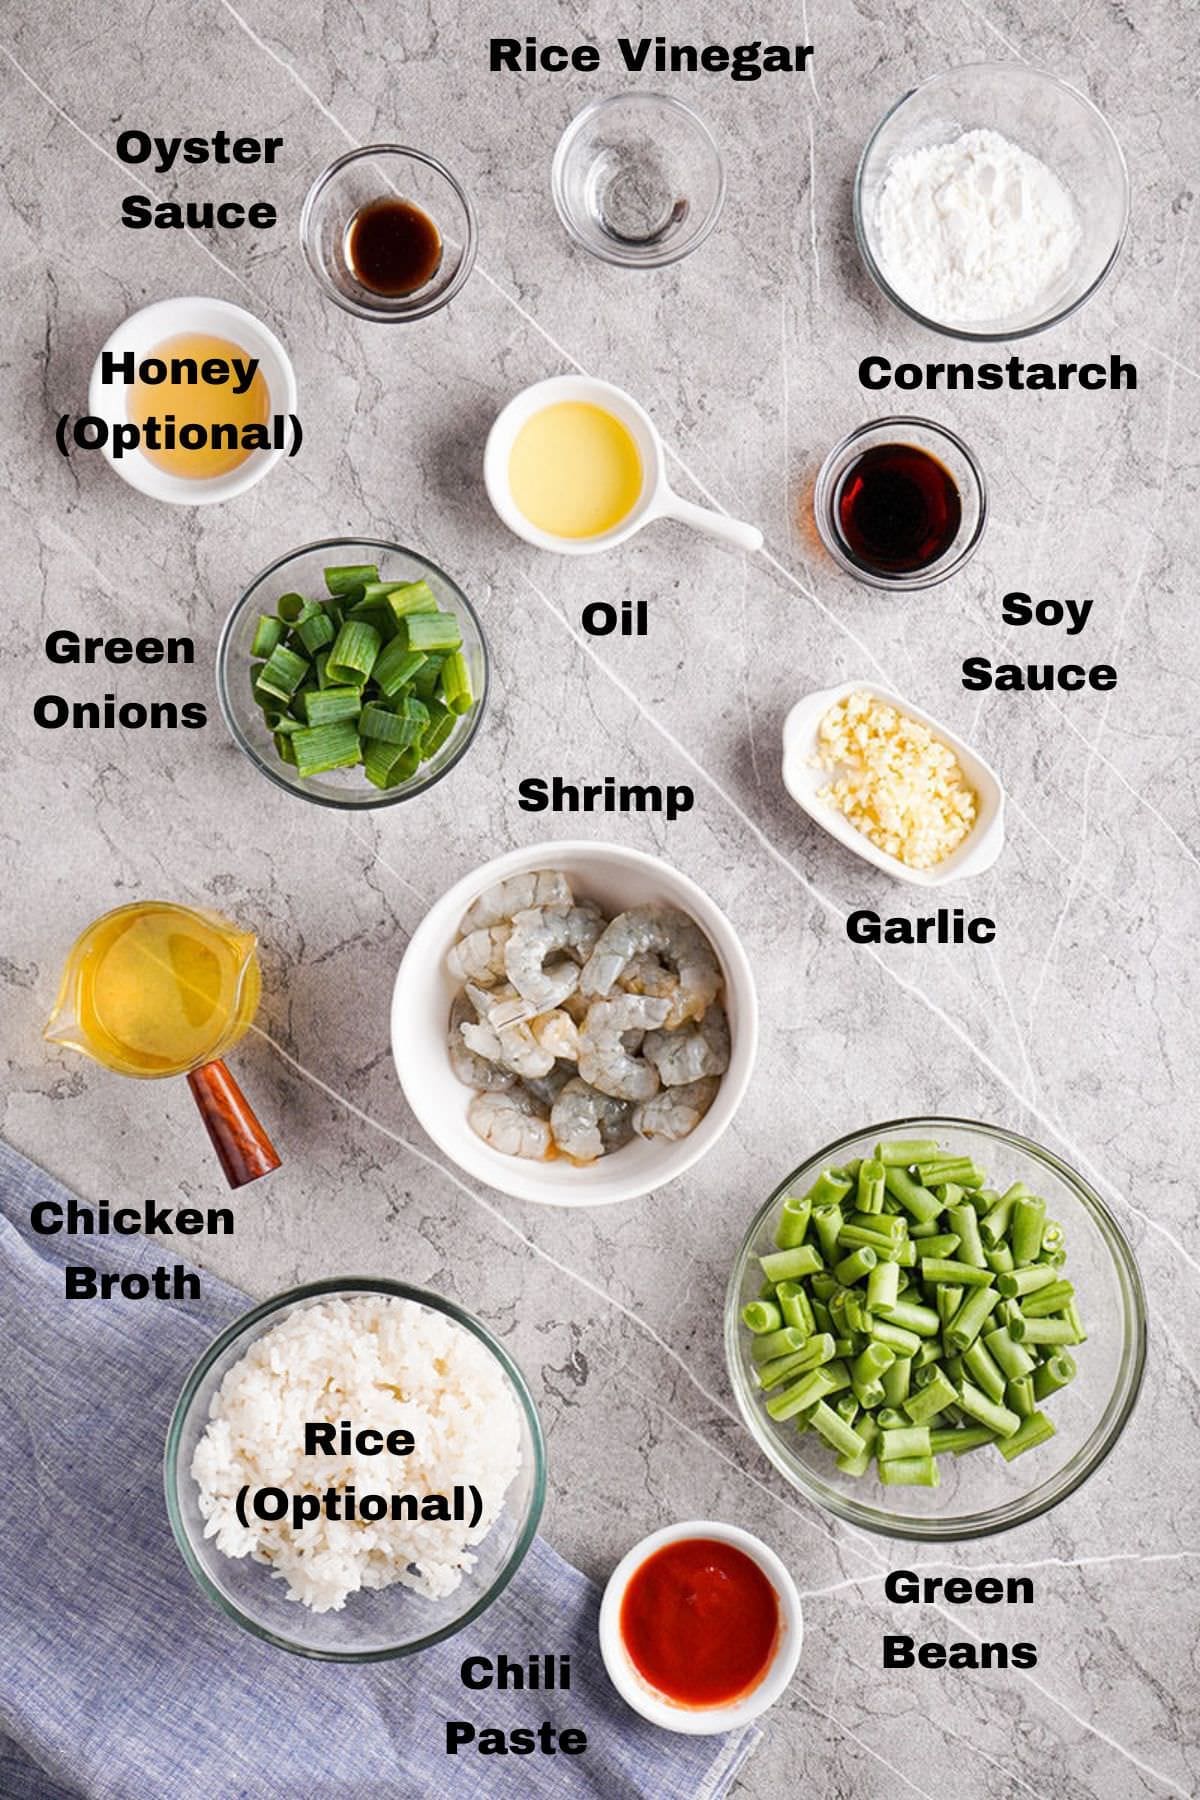 Labeled ingredients to make Hunan Sauce.